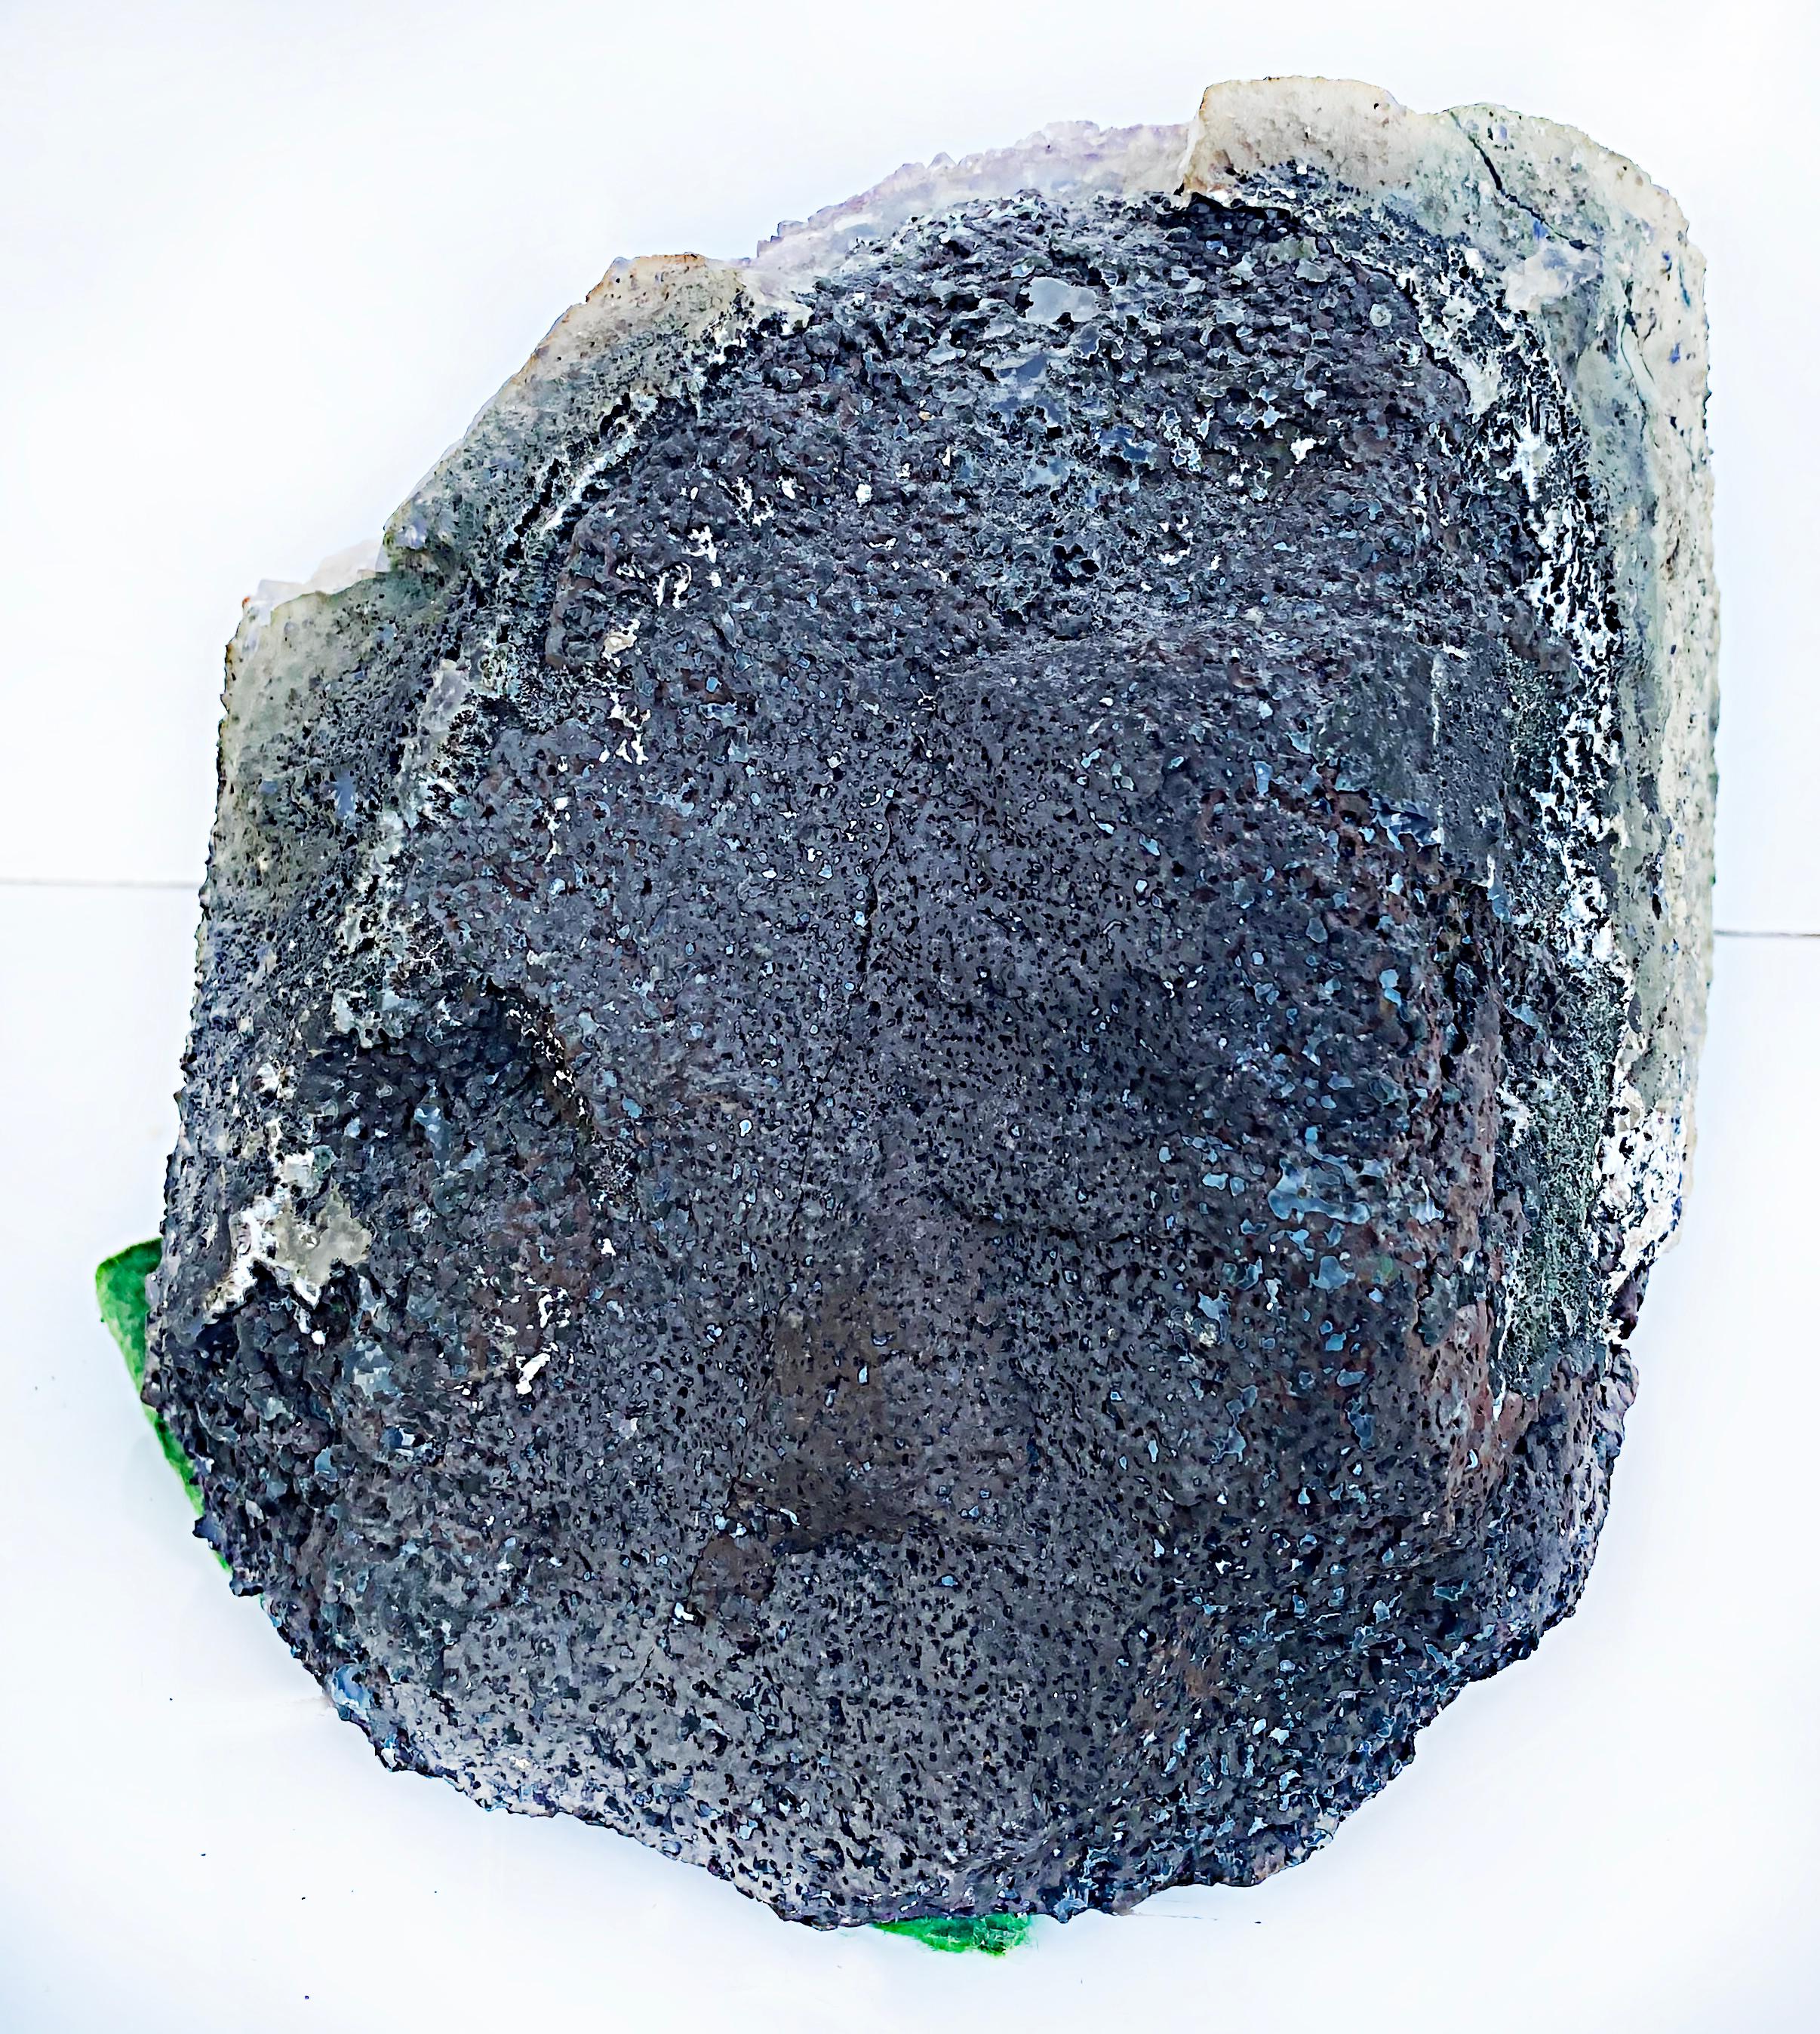 Large Amethyst Quartz Crystal Geode Mineral Specimen Cluster 5